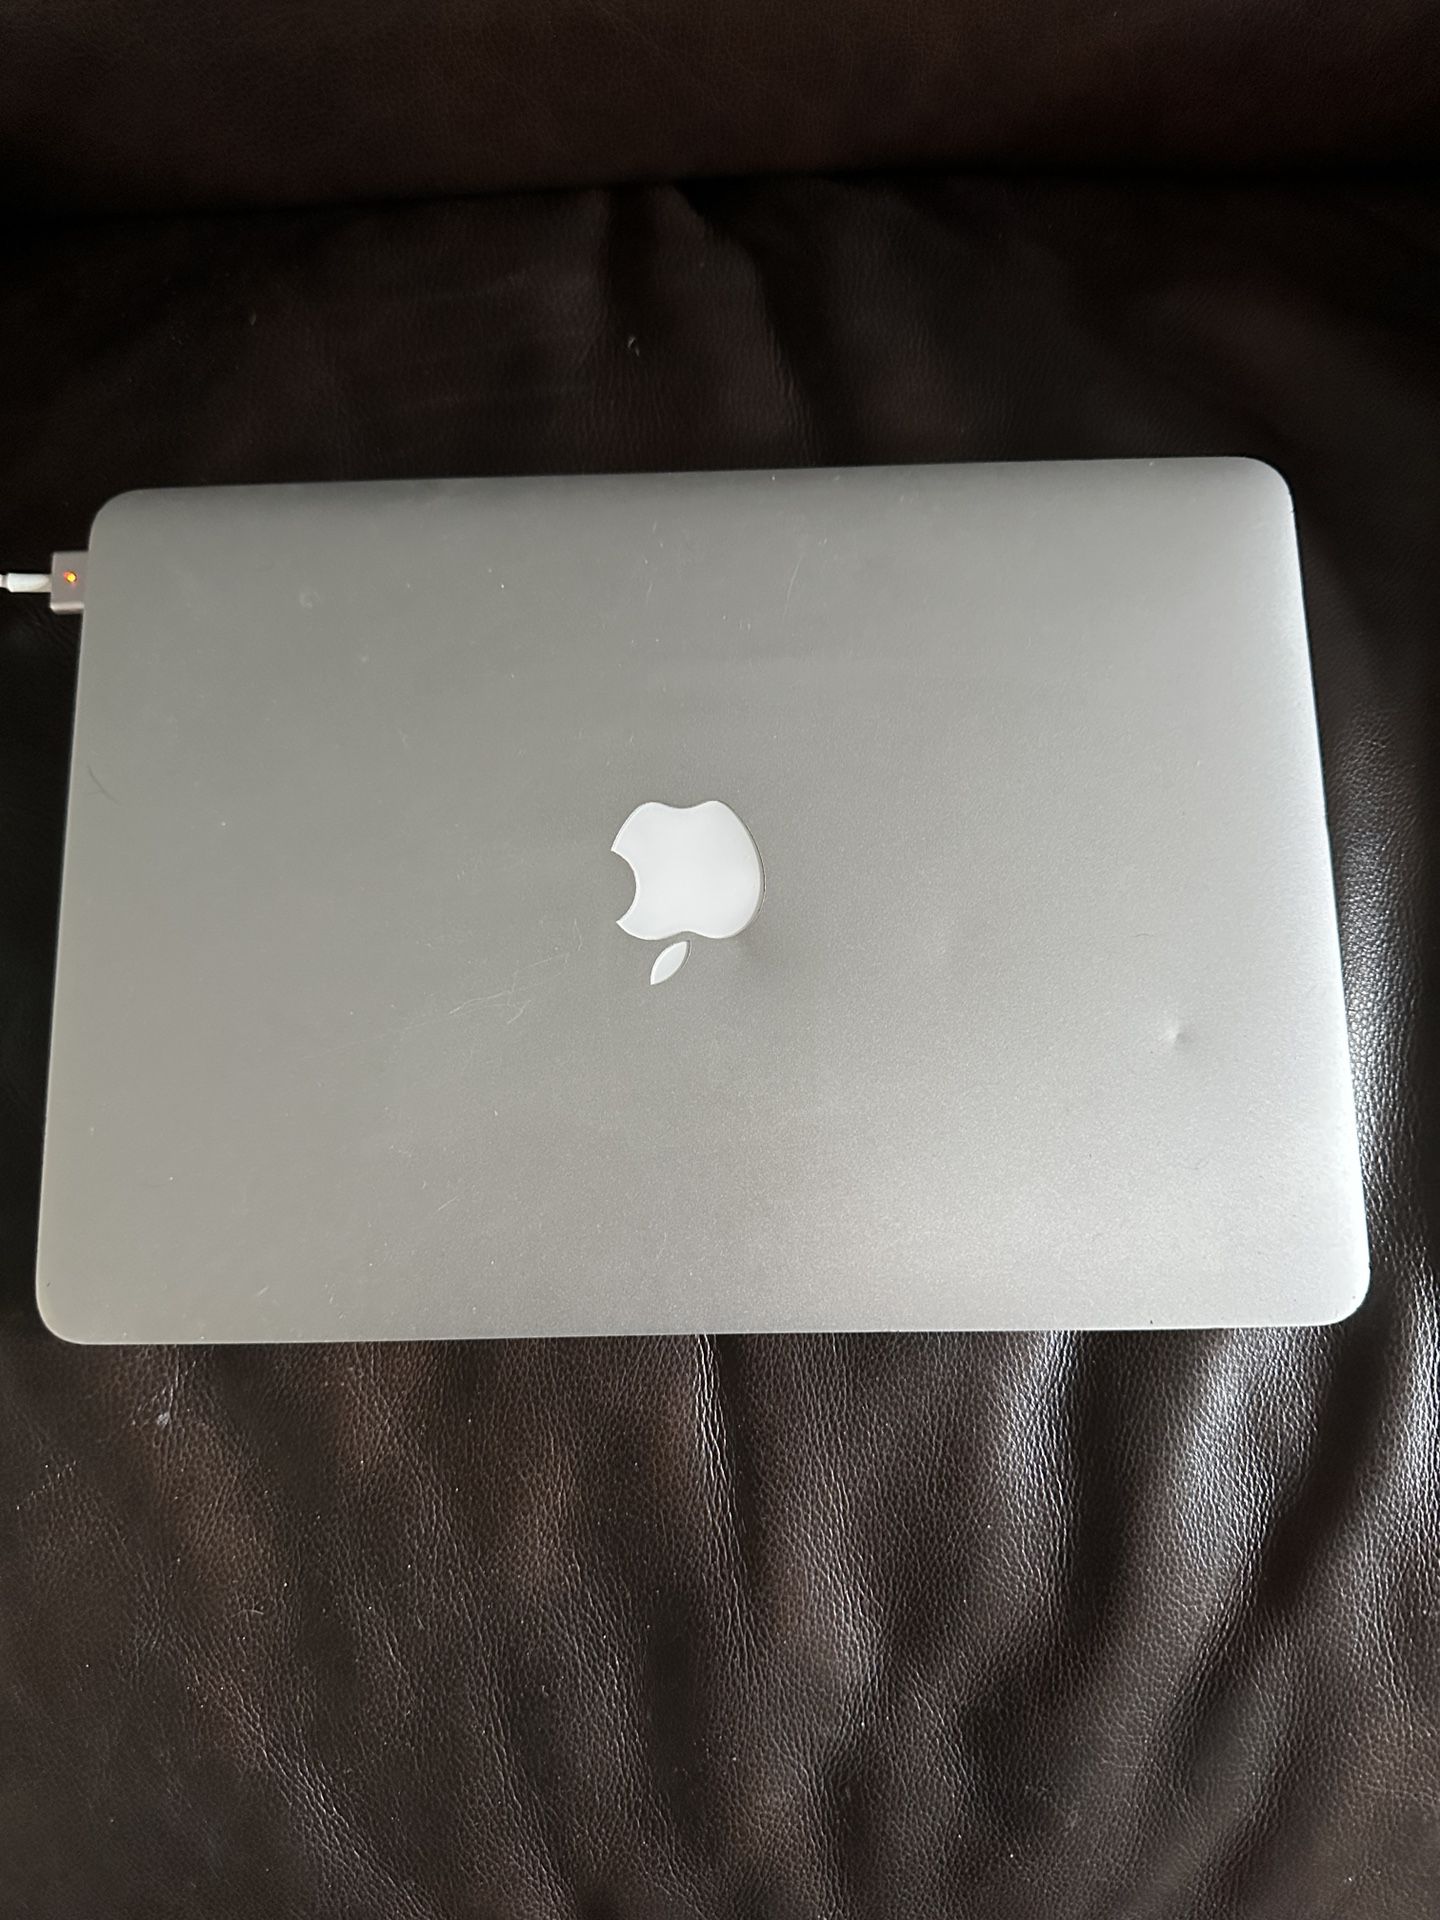 2015 MacBook Pro 13”